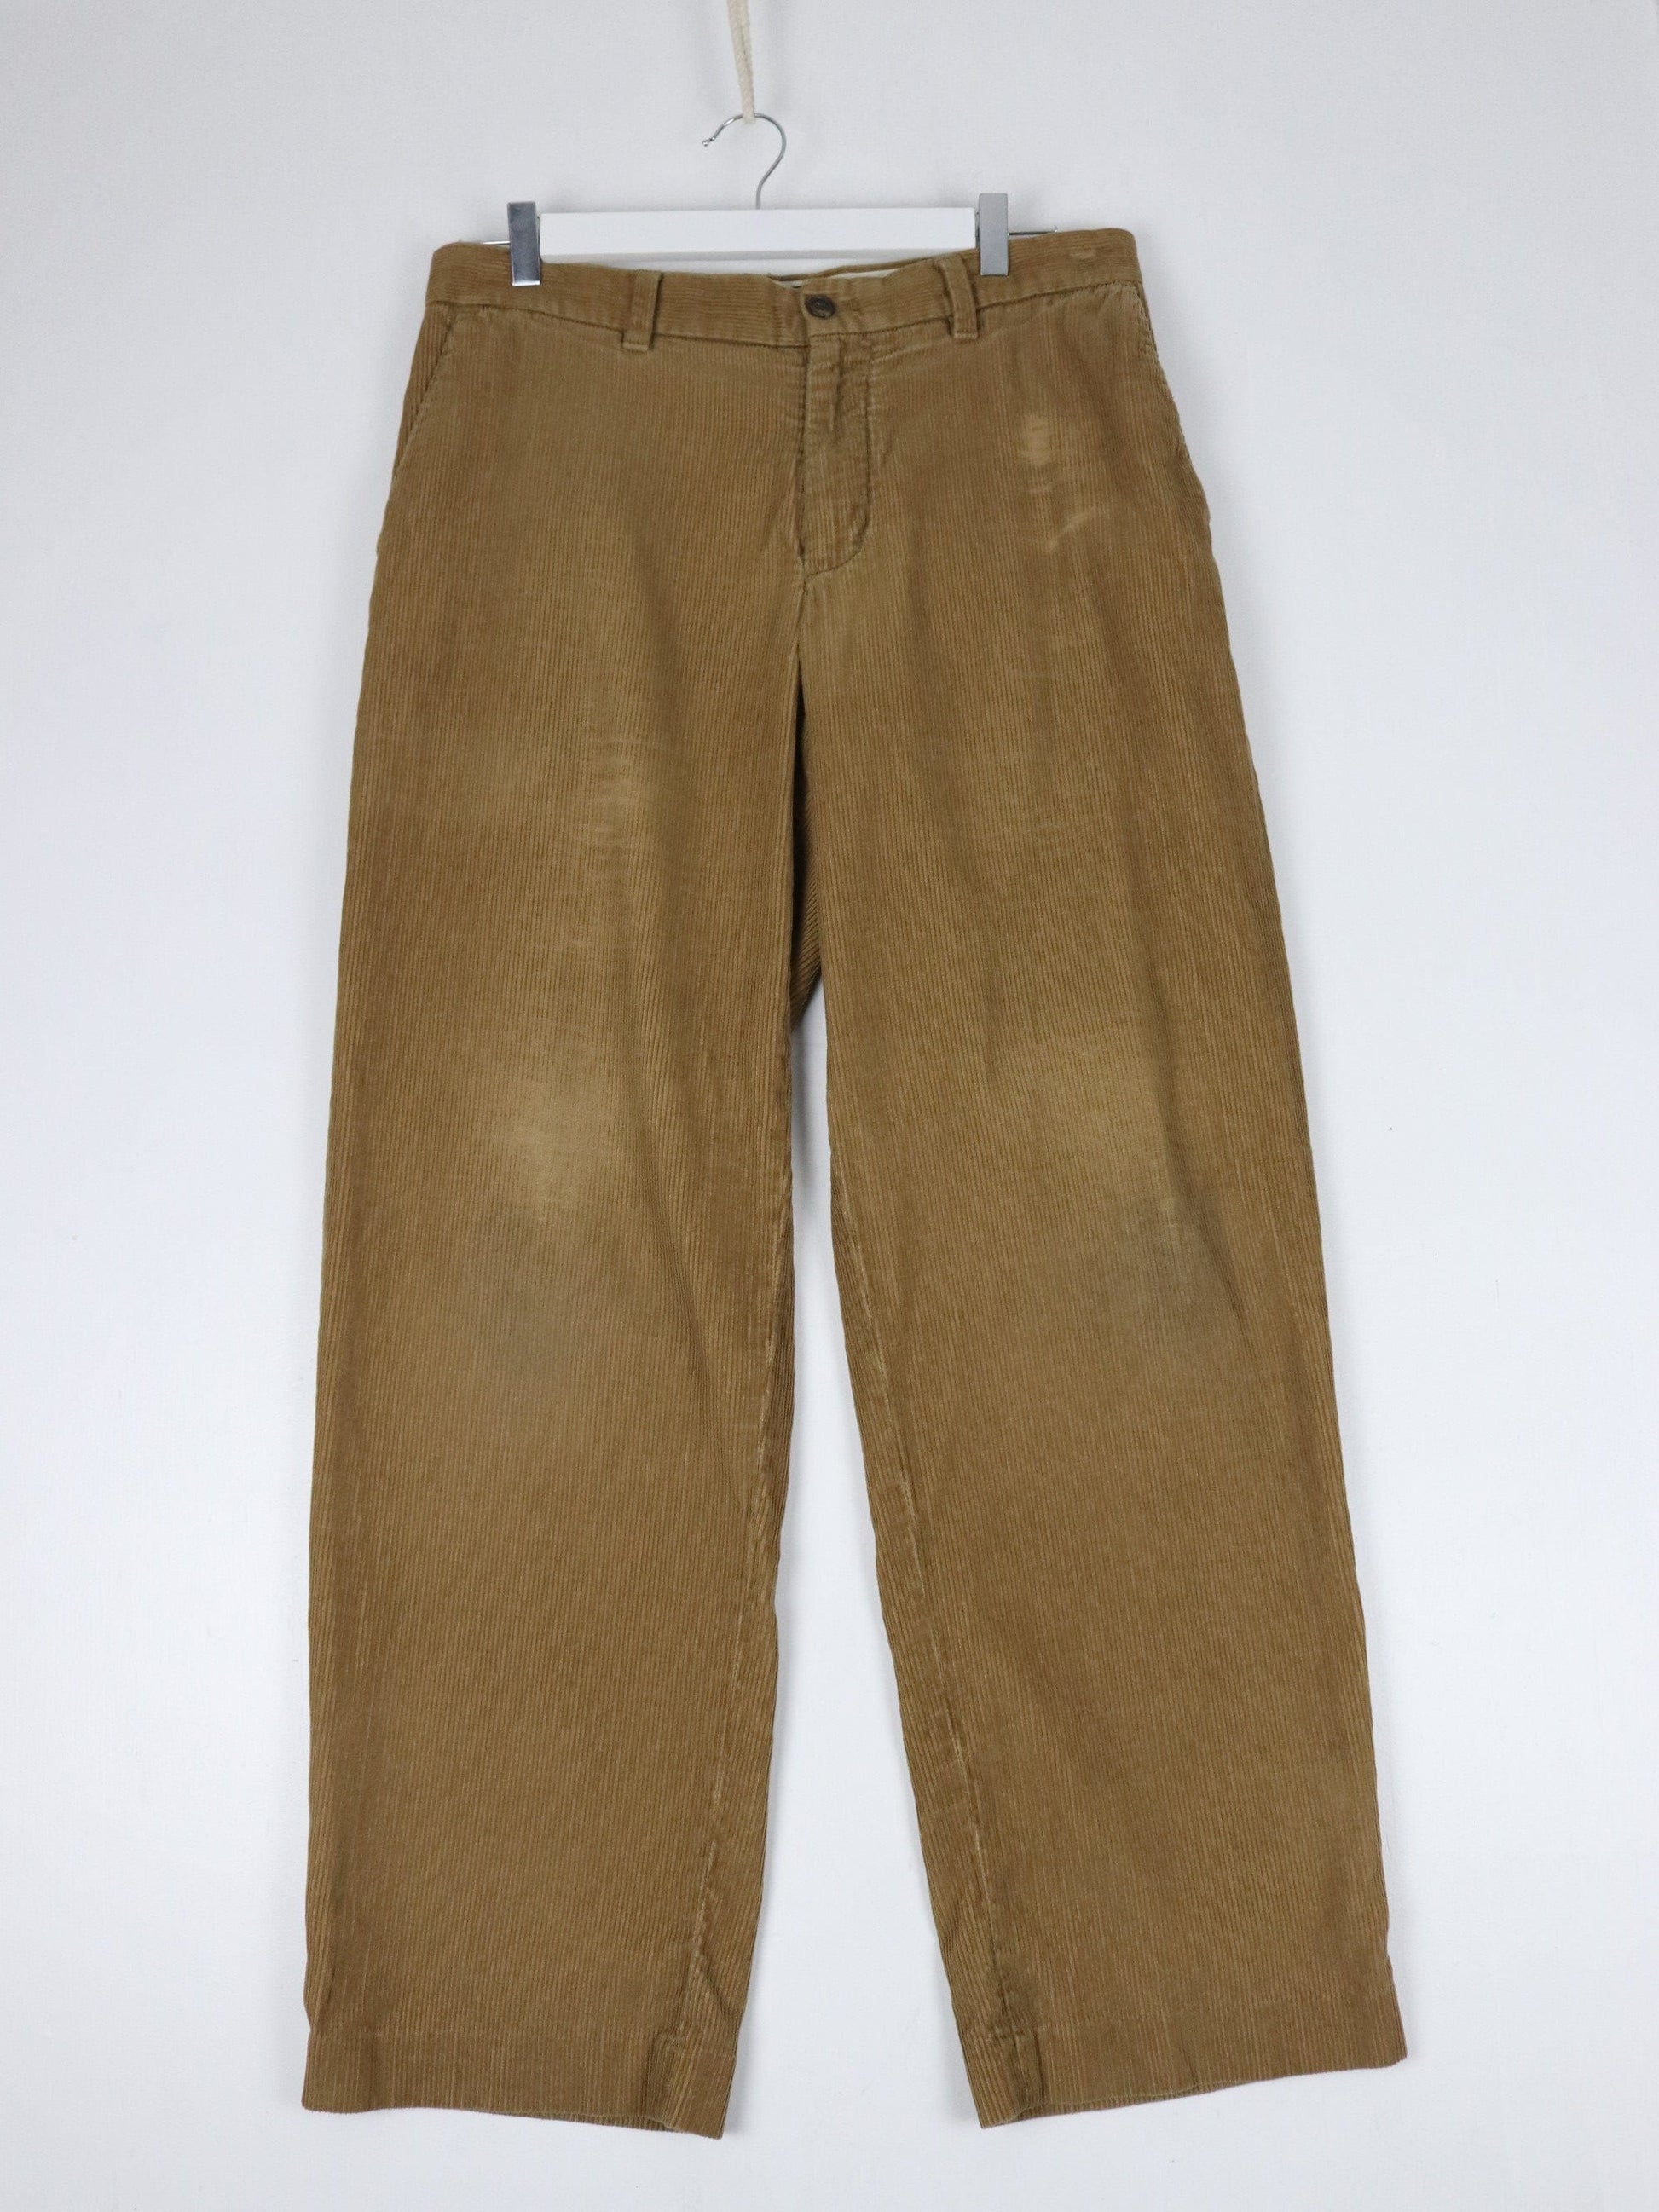 Eddie Bauer Pants Eddie Bauer Pants Fits Mens 33 x 29 Brown Corduroy Trousers